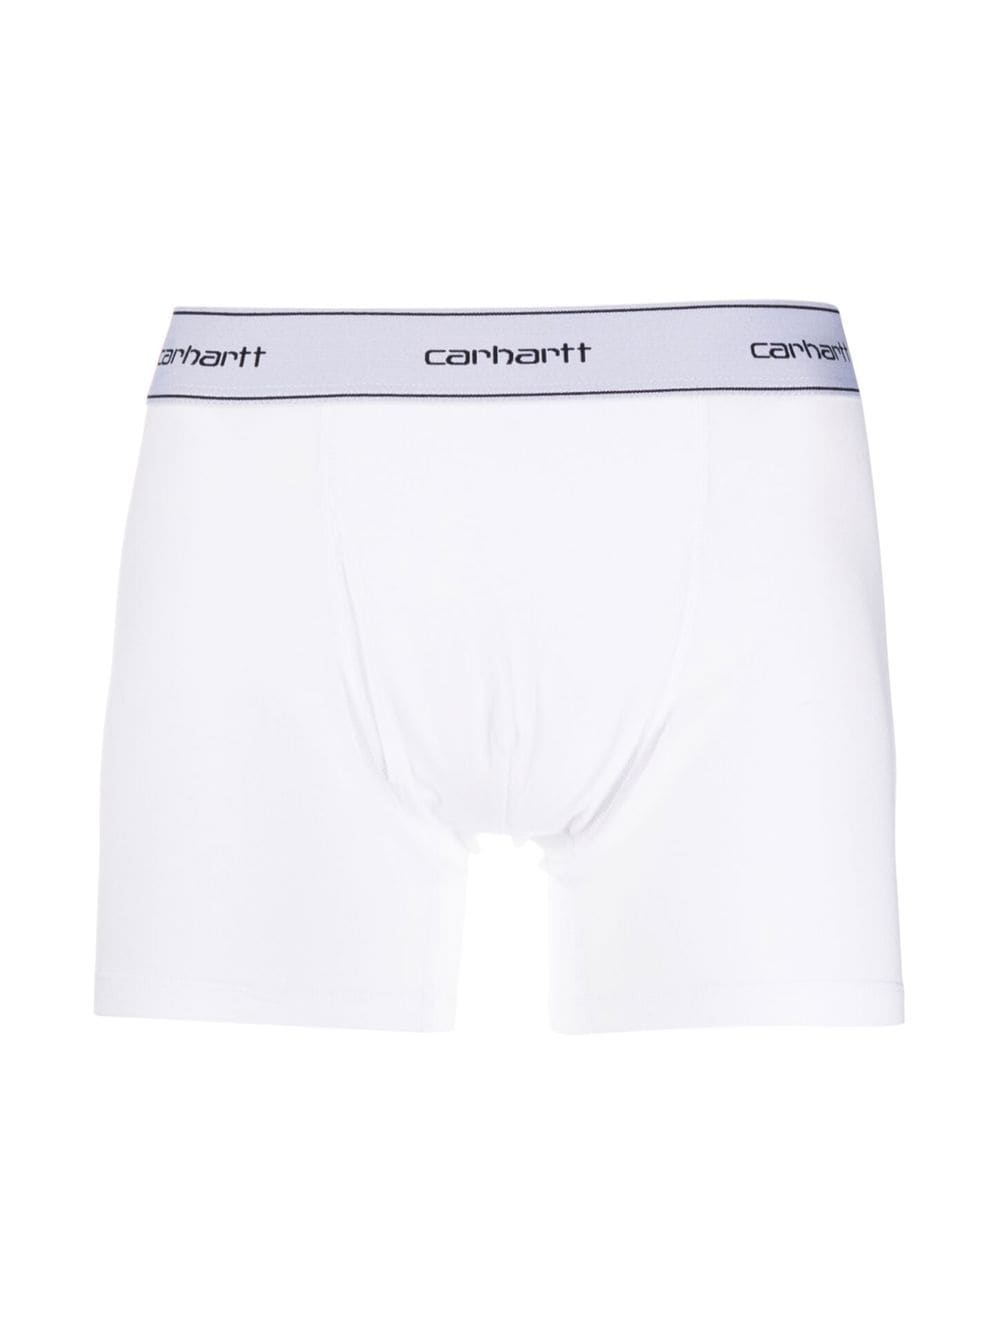 Carhartt CARHARTT- Logo Cotton Trunks